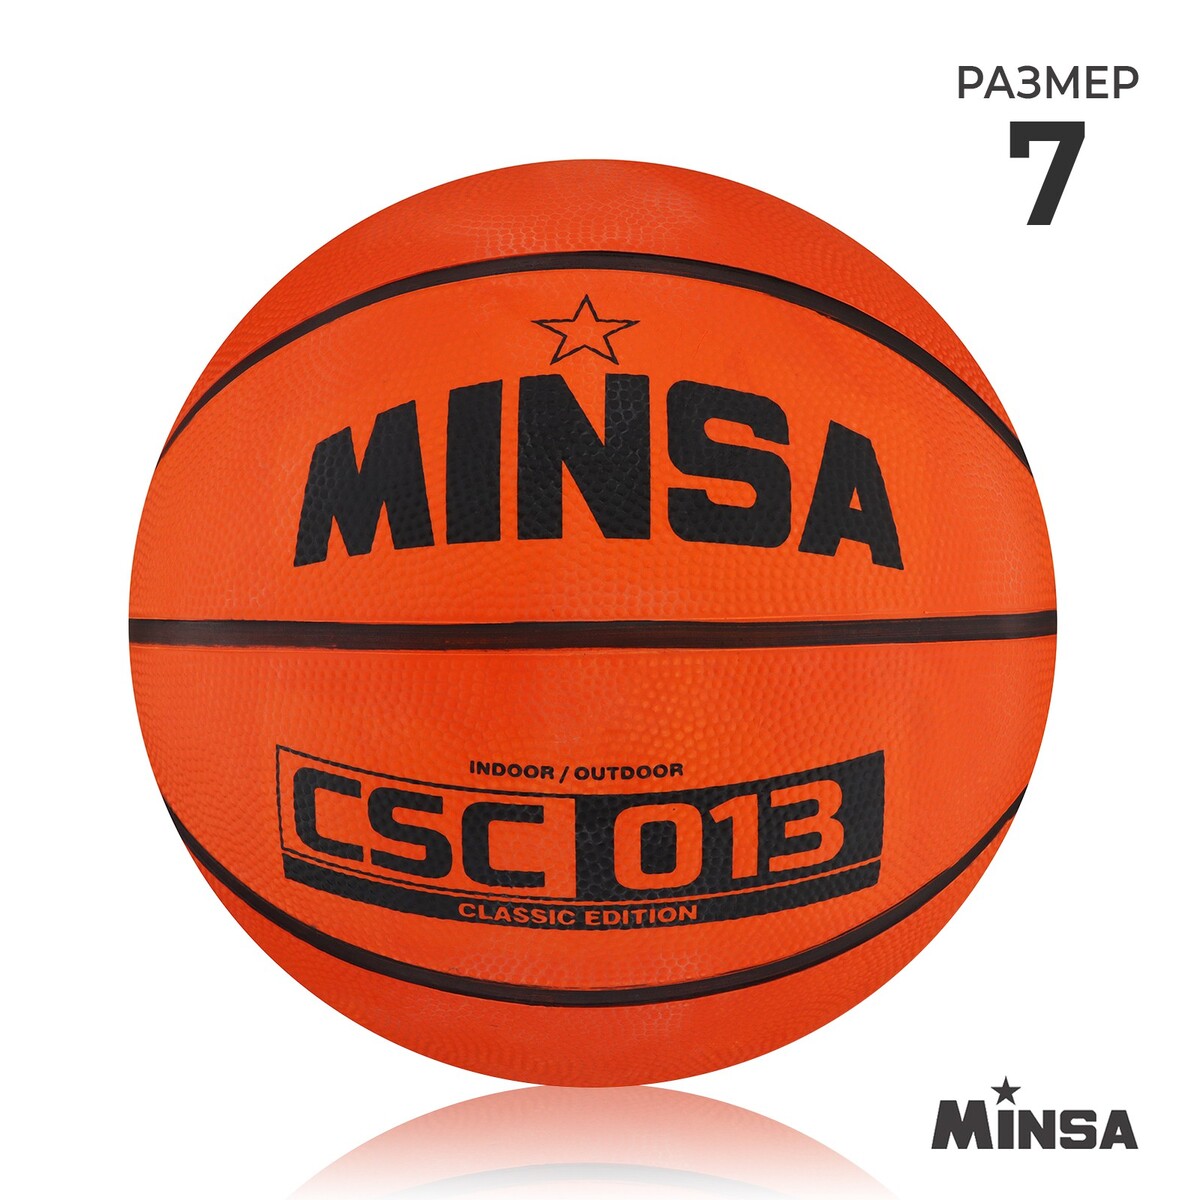 Мяч баскетбольный minsa csc 013, пвх, клееный, 8 панелей, р. 7 мяч баскетбольный torres bm300 b00015 резина клееный 8 панелей р 5